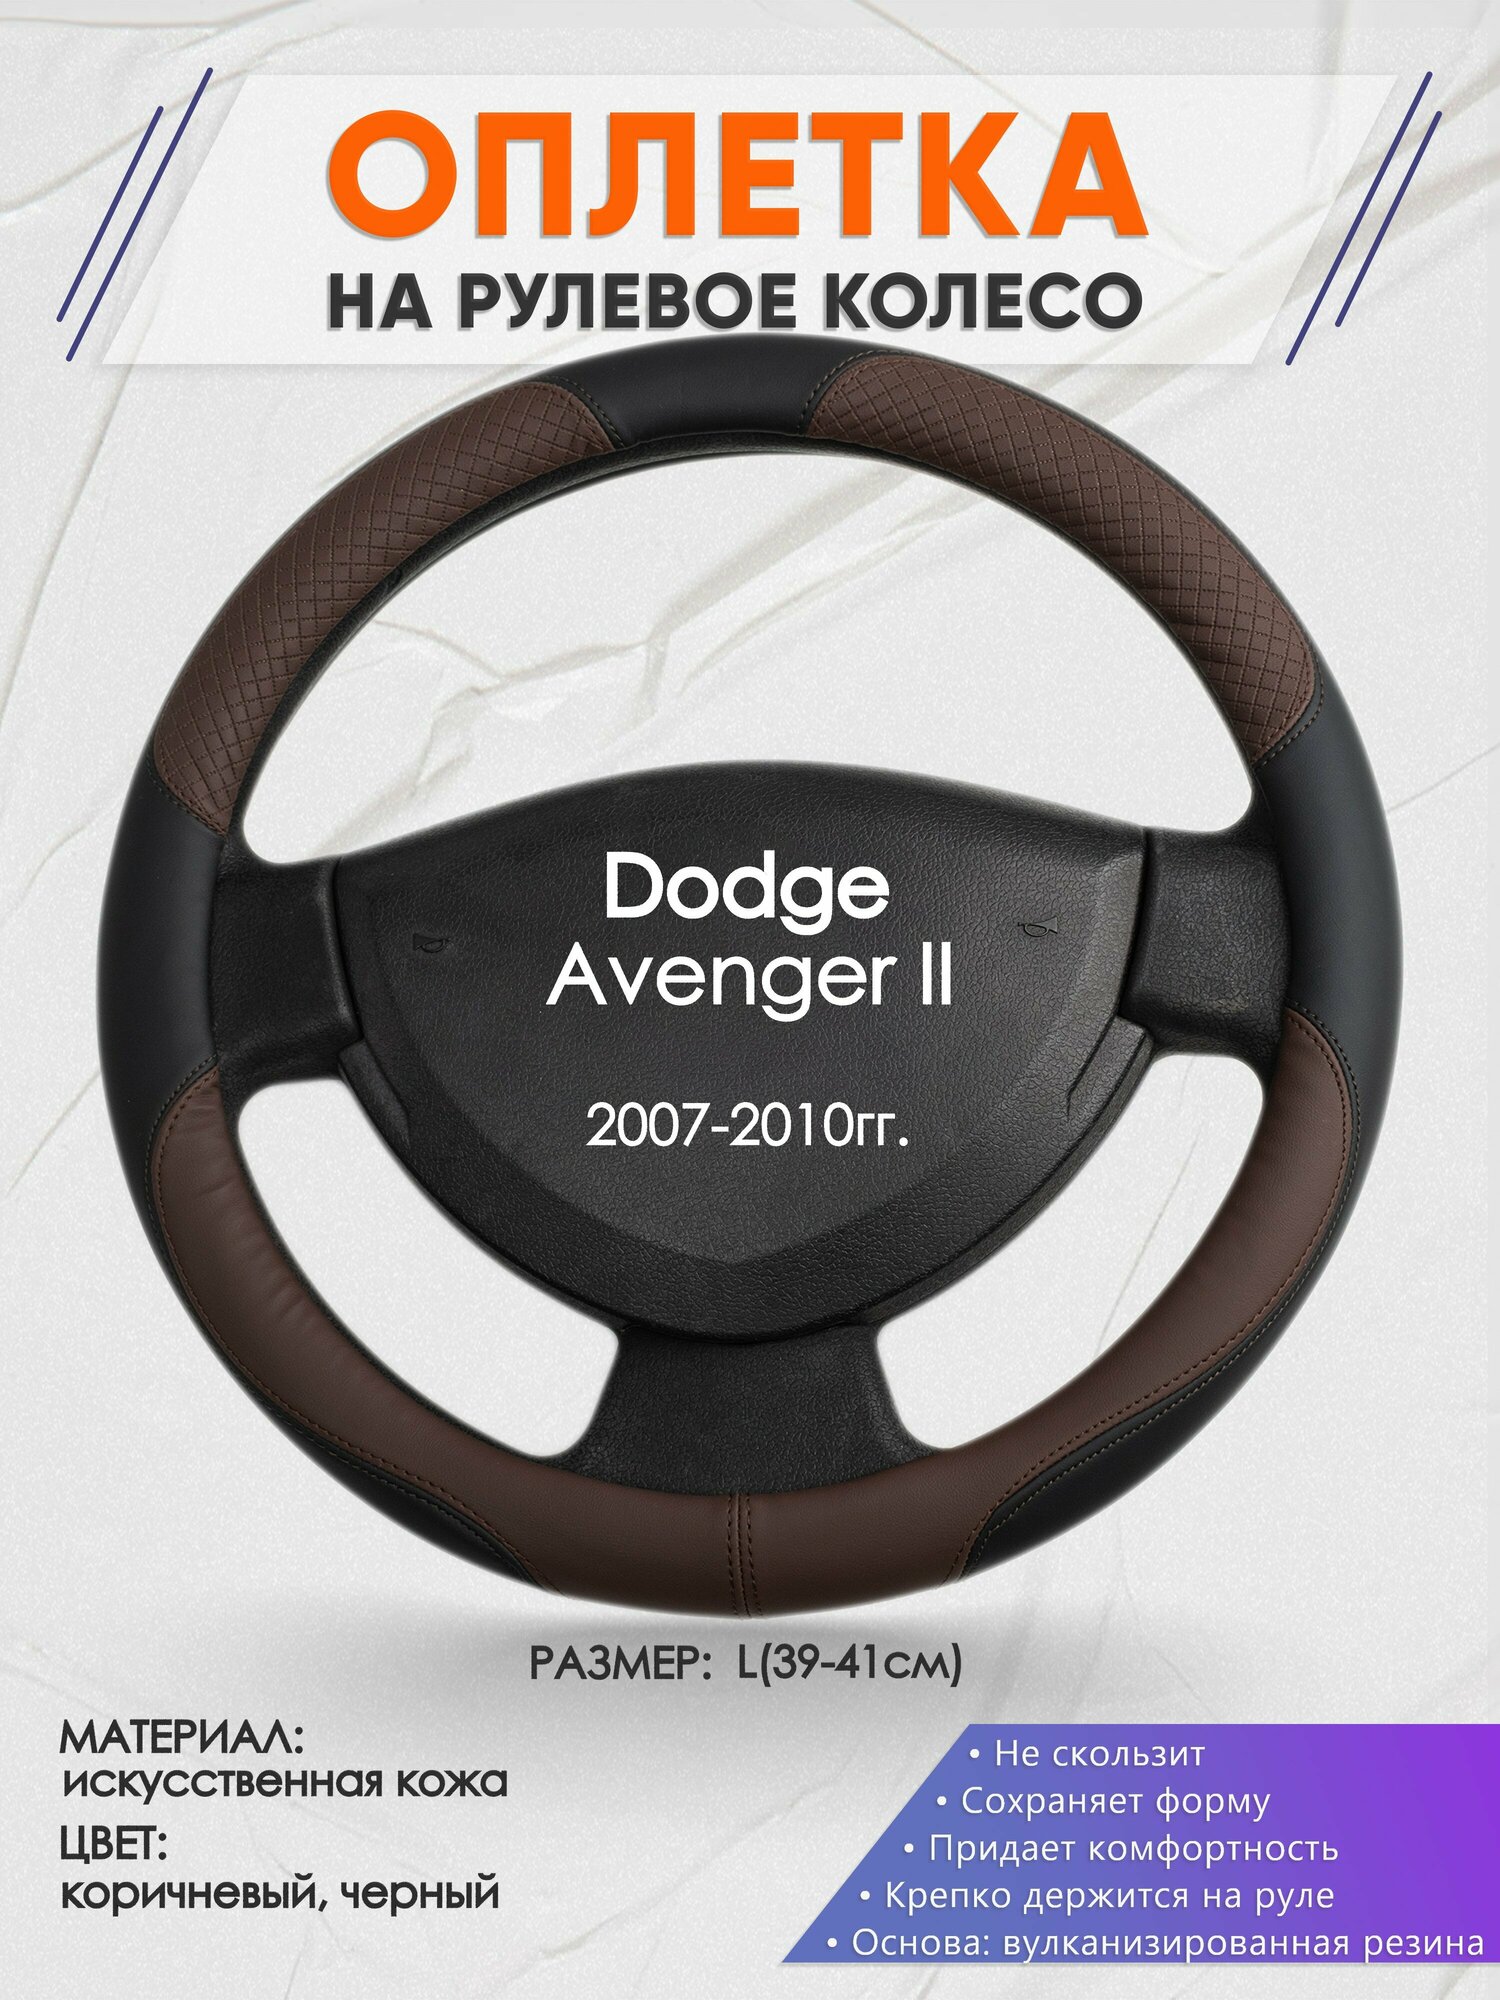 Оплетка на руль для Dodge Avenger 2(Додж Авенджер) 2007-2010, L(39-41см), Искусственная кожа 62